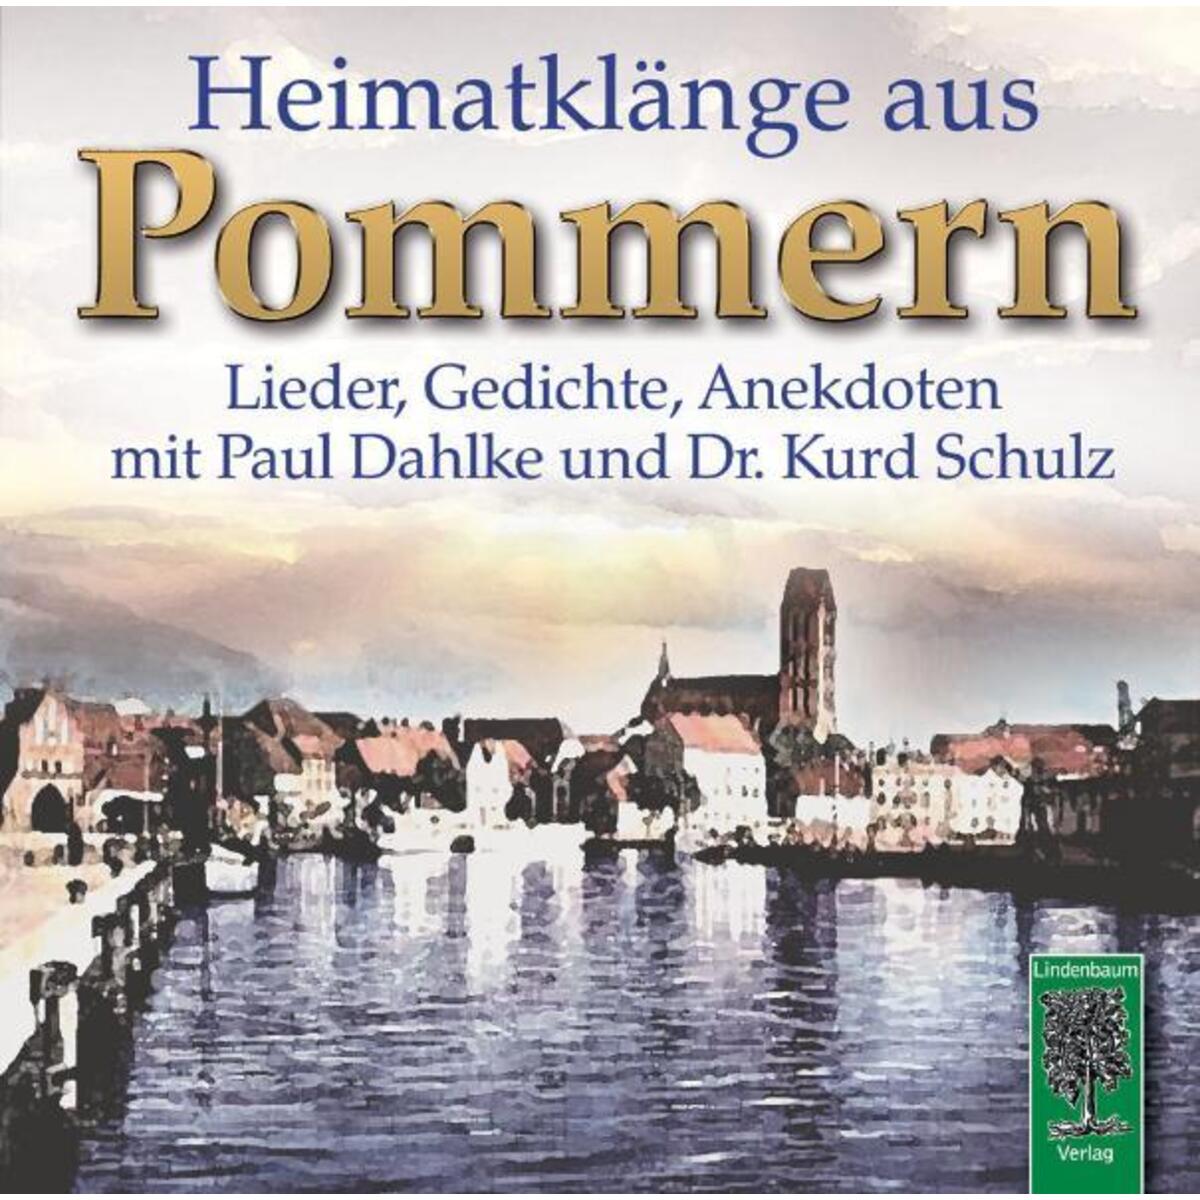 CD: »Heimatklänge aus Pommern« von Lindenbaum